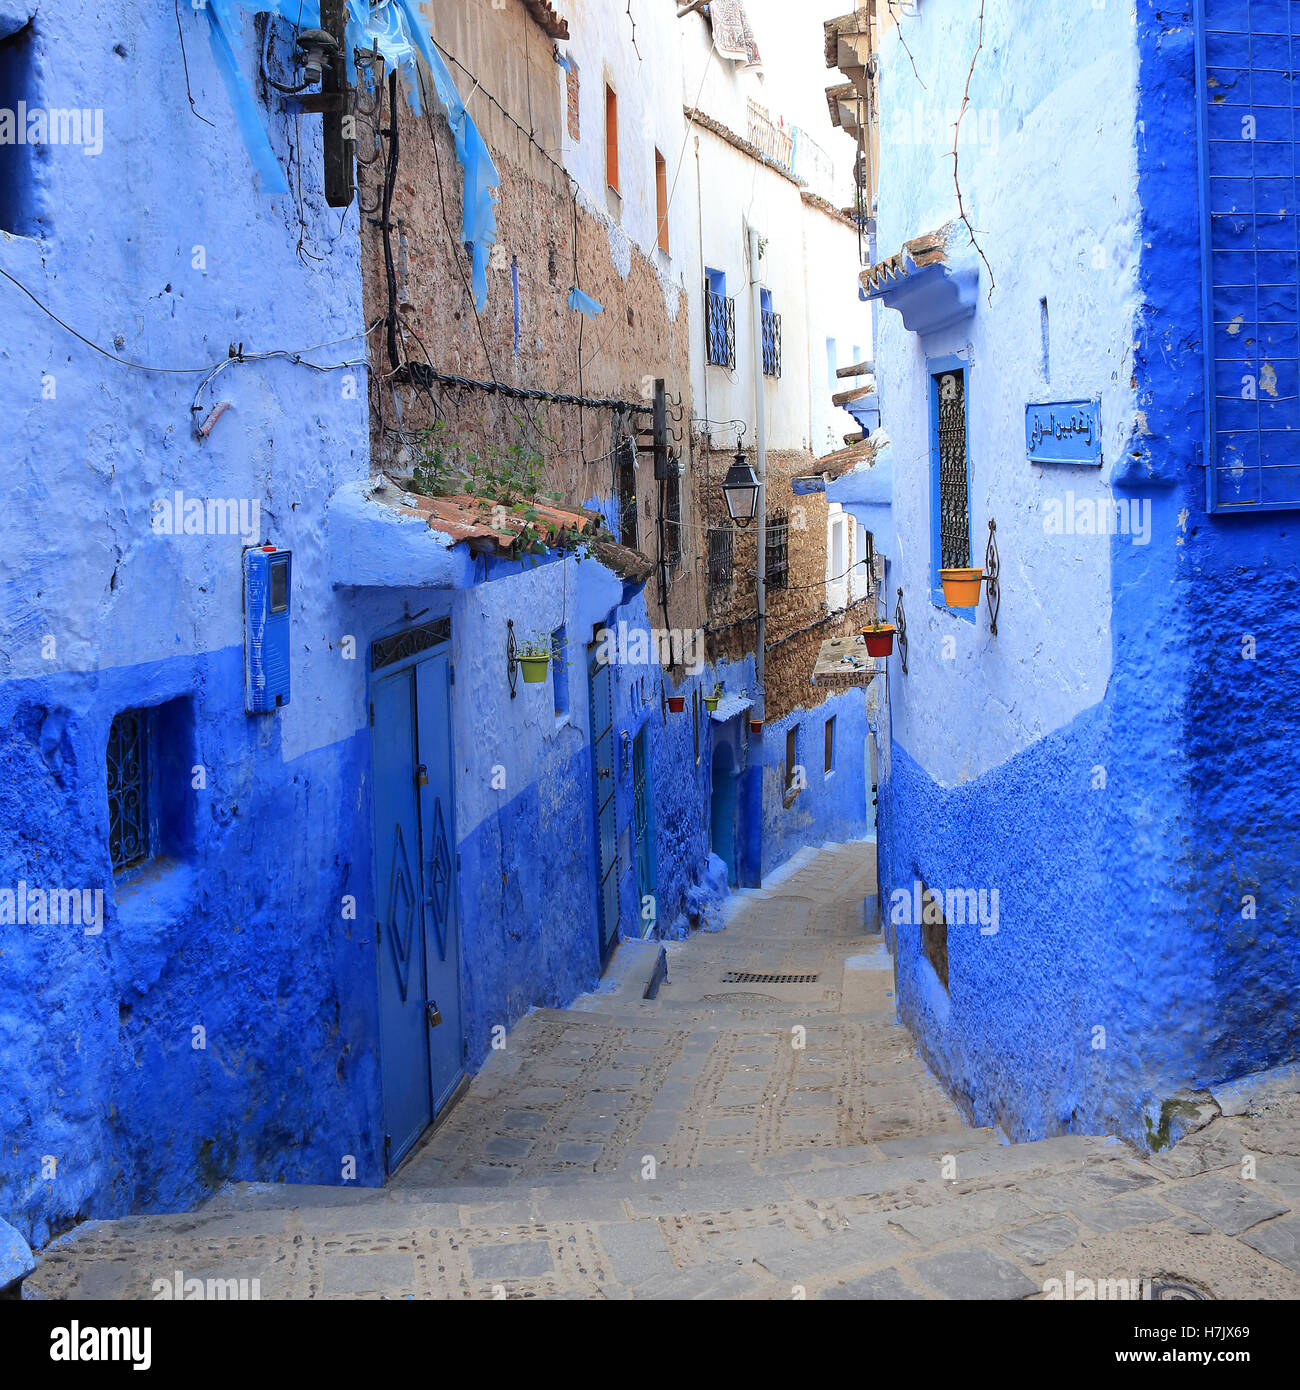 Des murs bleus des maisons dans les rues étroites de la ville bleue, Chefchaouen, Maroc. Banque D'Images